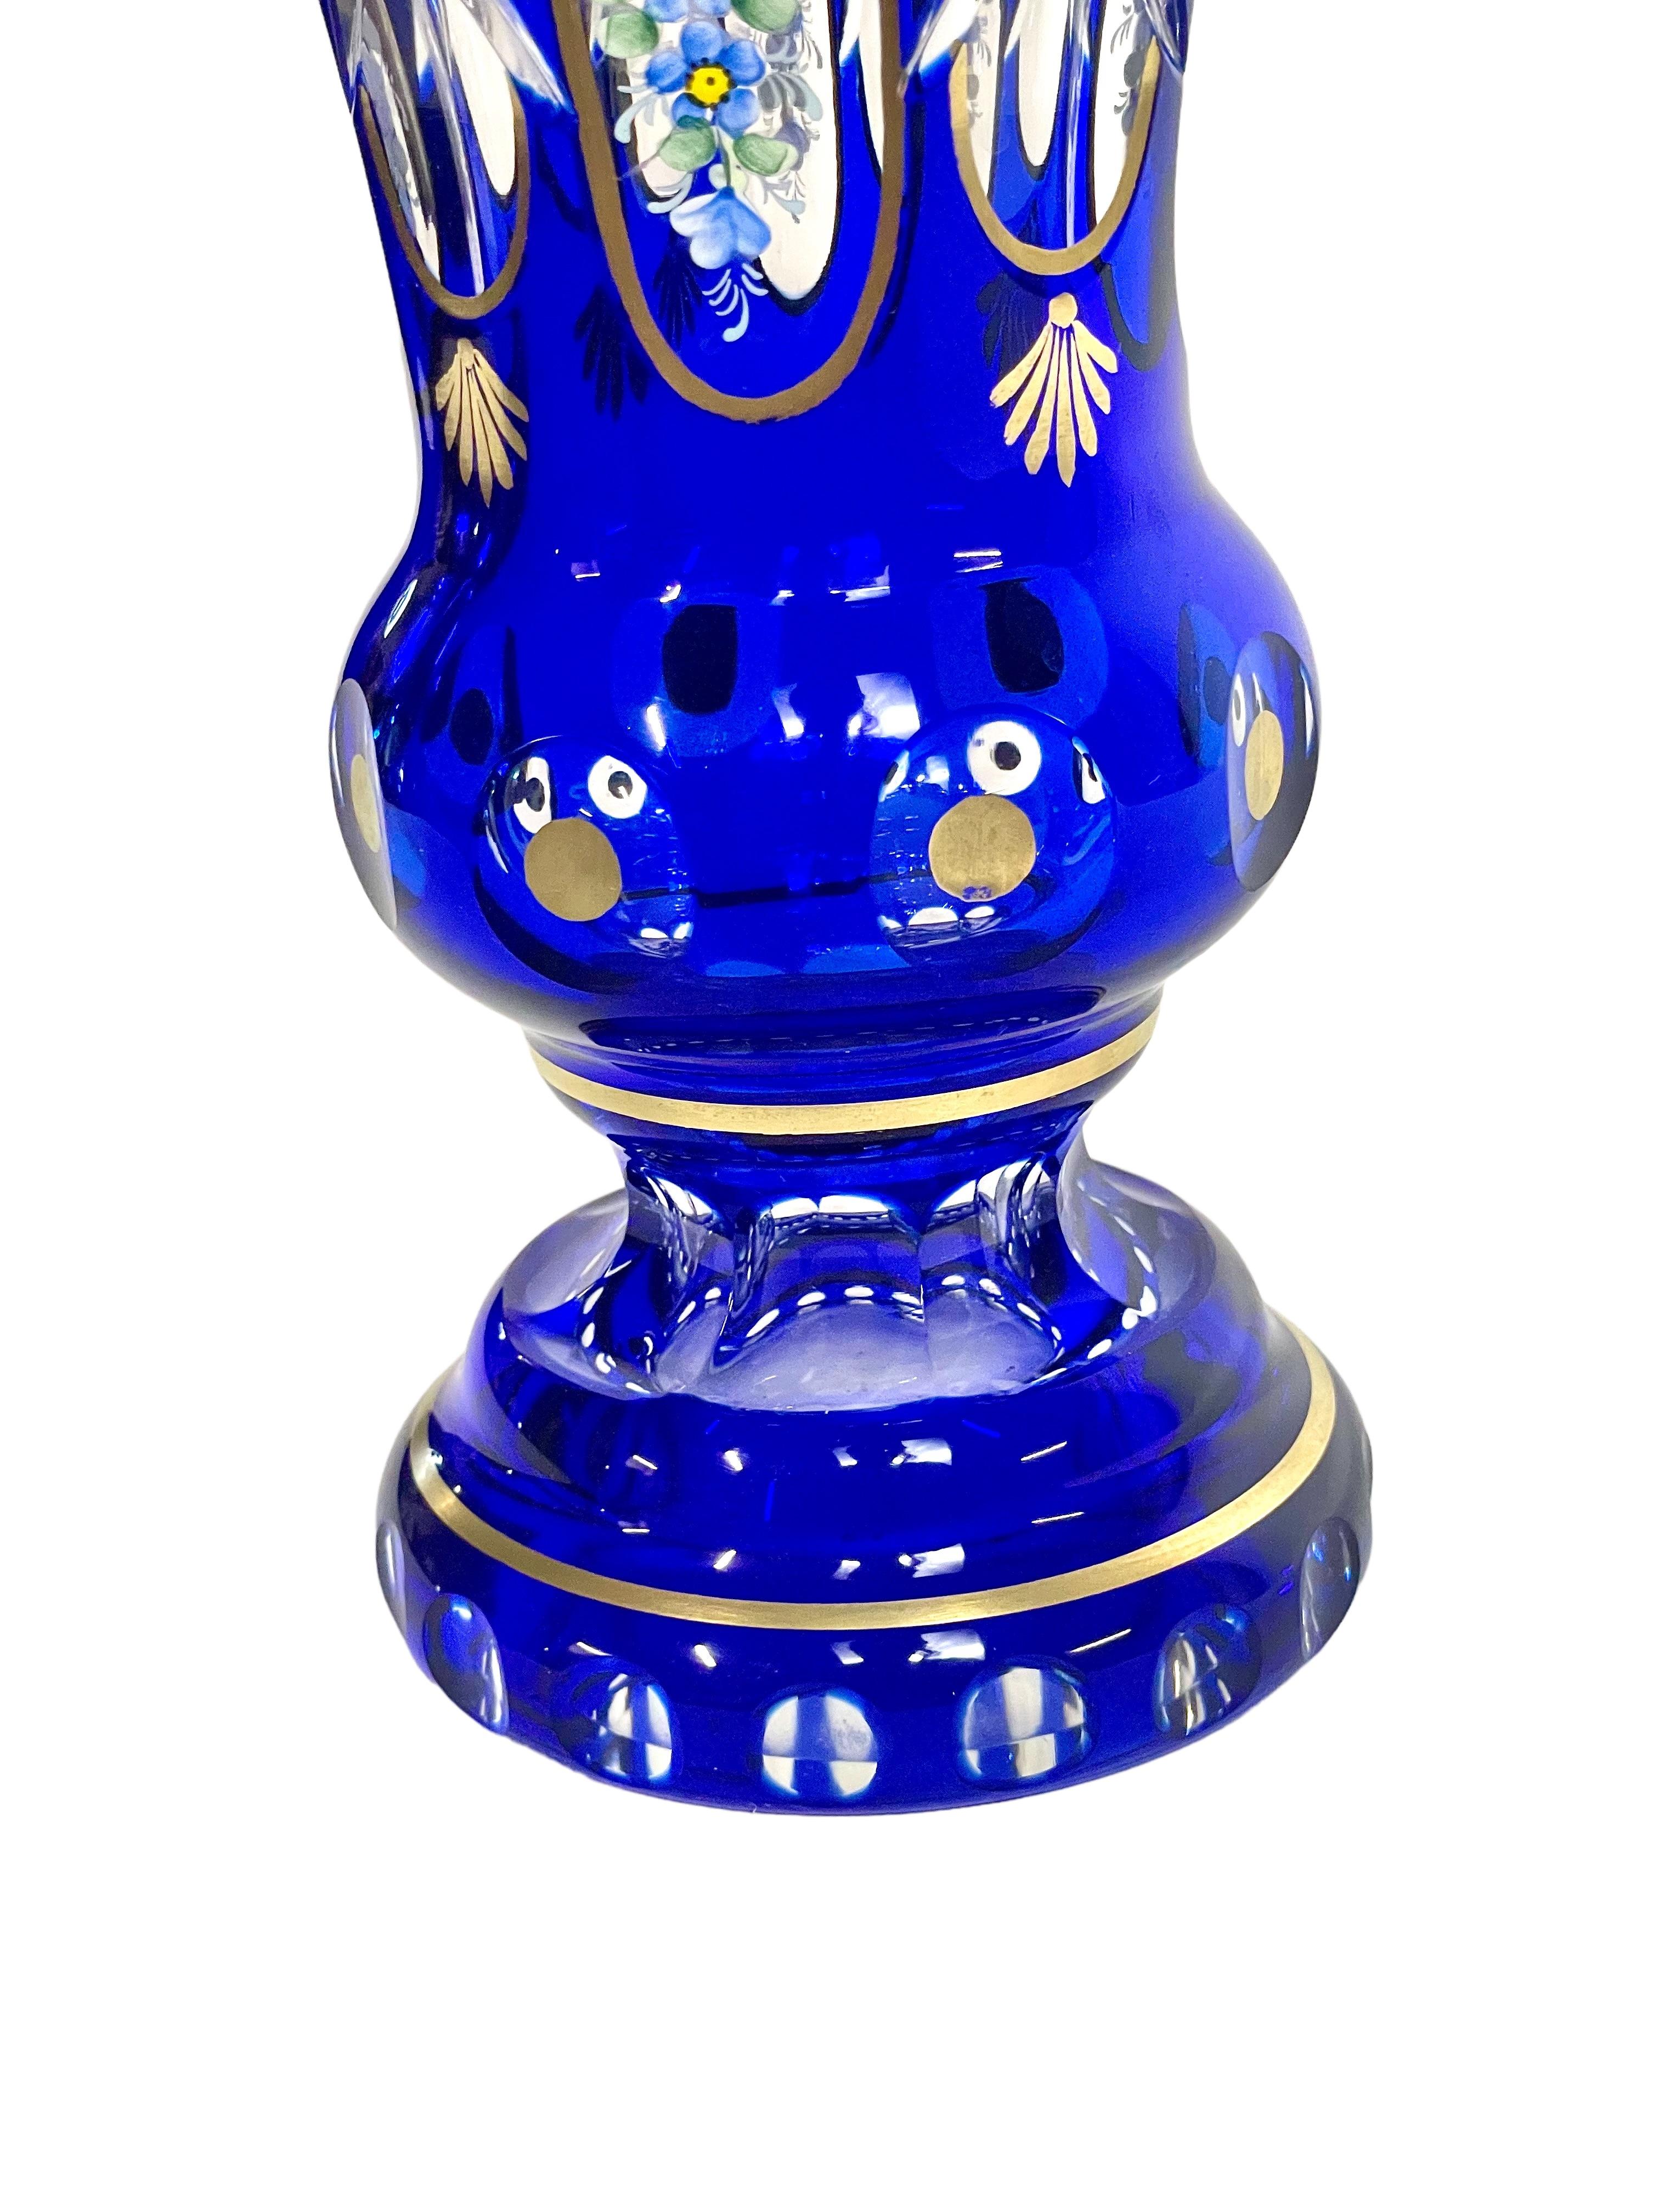 Un joli vase à pied en cristal bleu cobalt, soufflé et taillé à la main, peint avec des motifs floraux en émail et des garnitures dorées complexes. Ce vase de style bohème compléterait à merveille le décor d'une chambre à coucher vintage, ou d'une